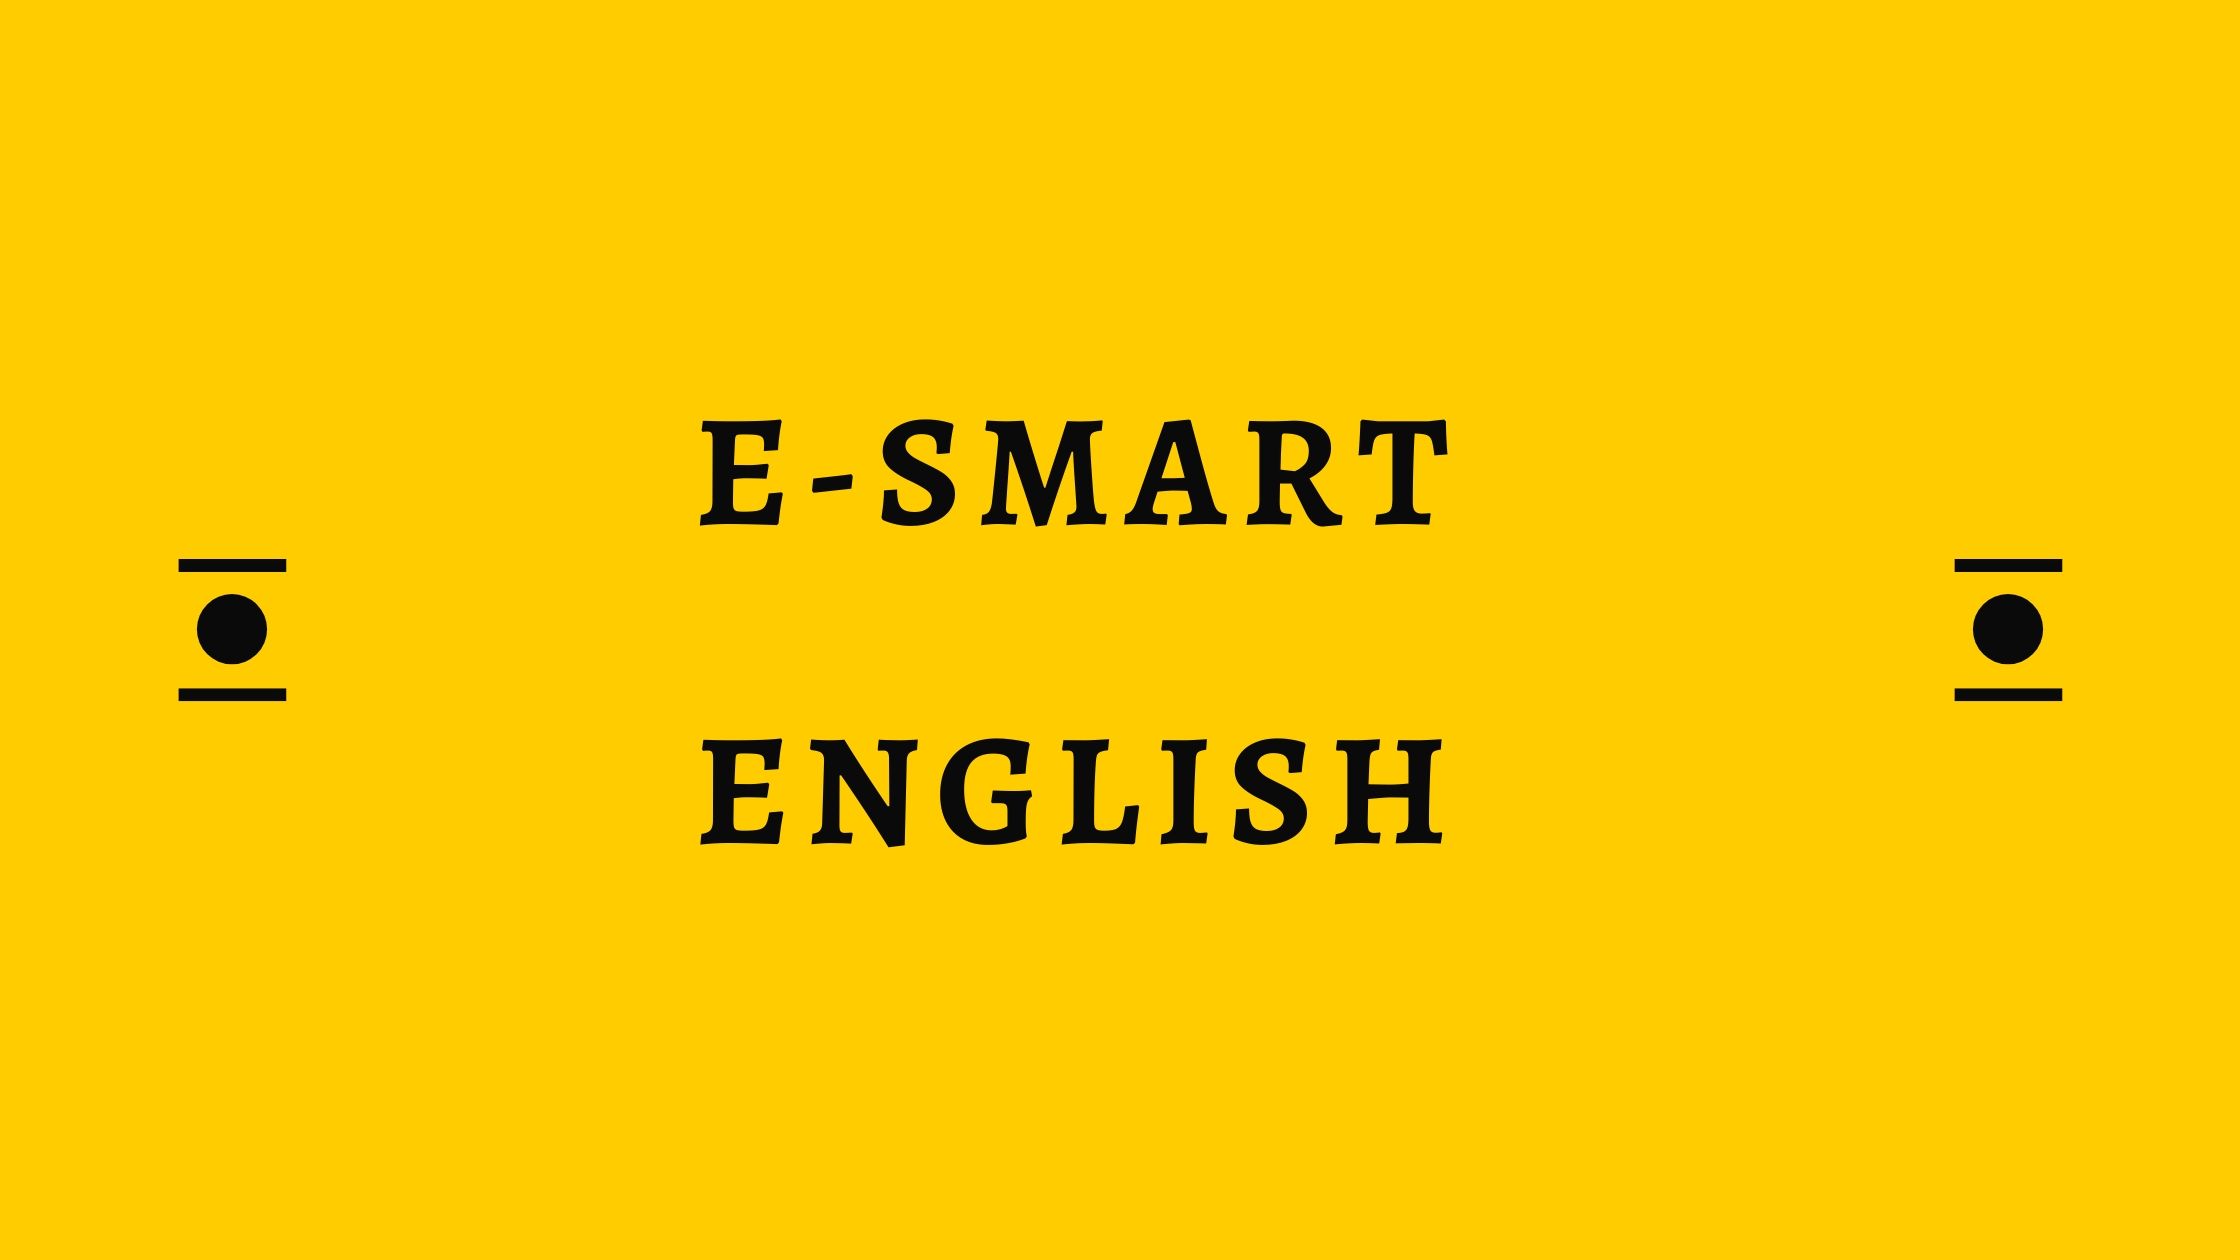 E-smart english